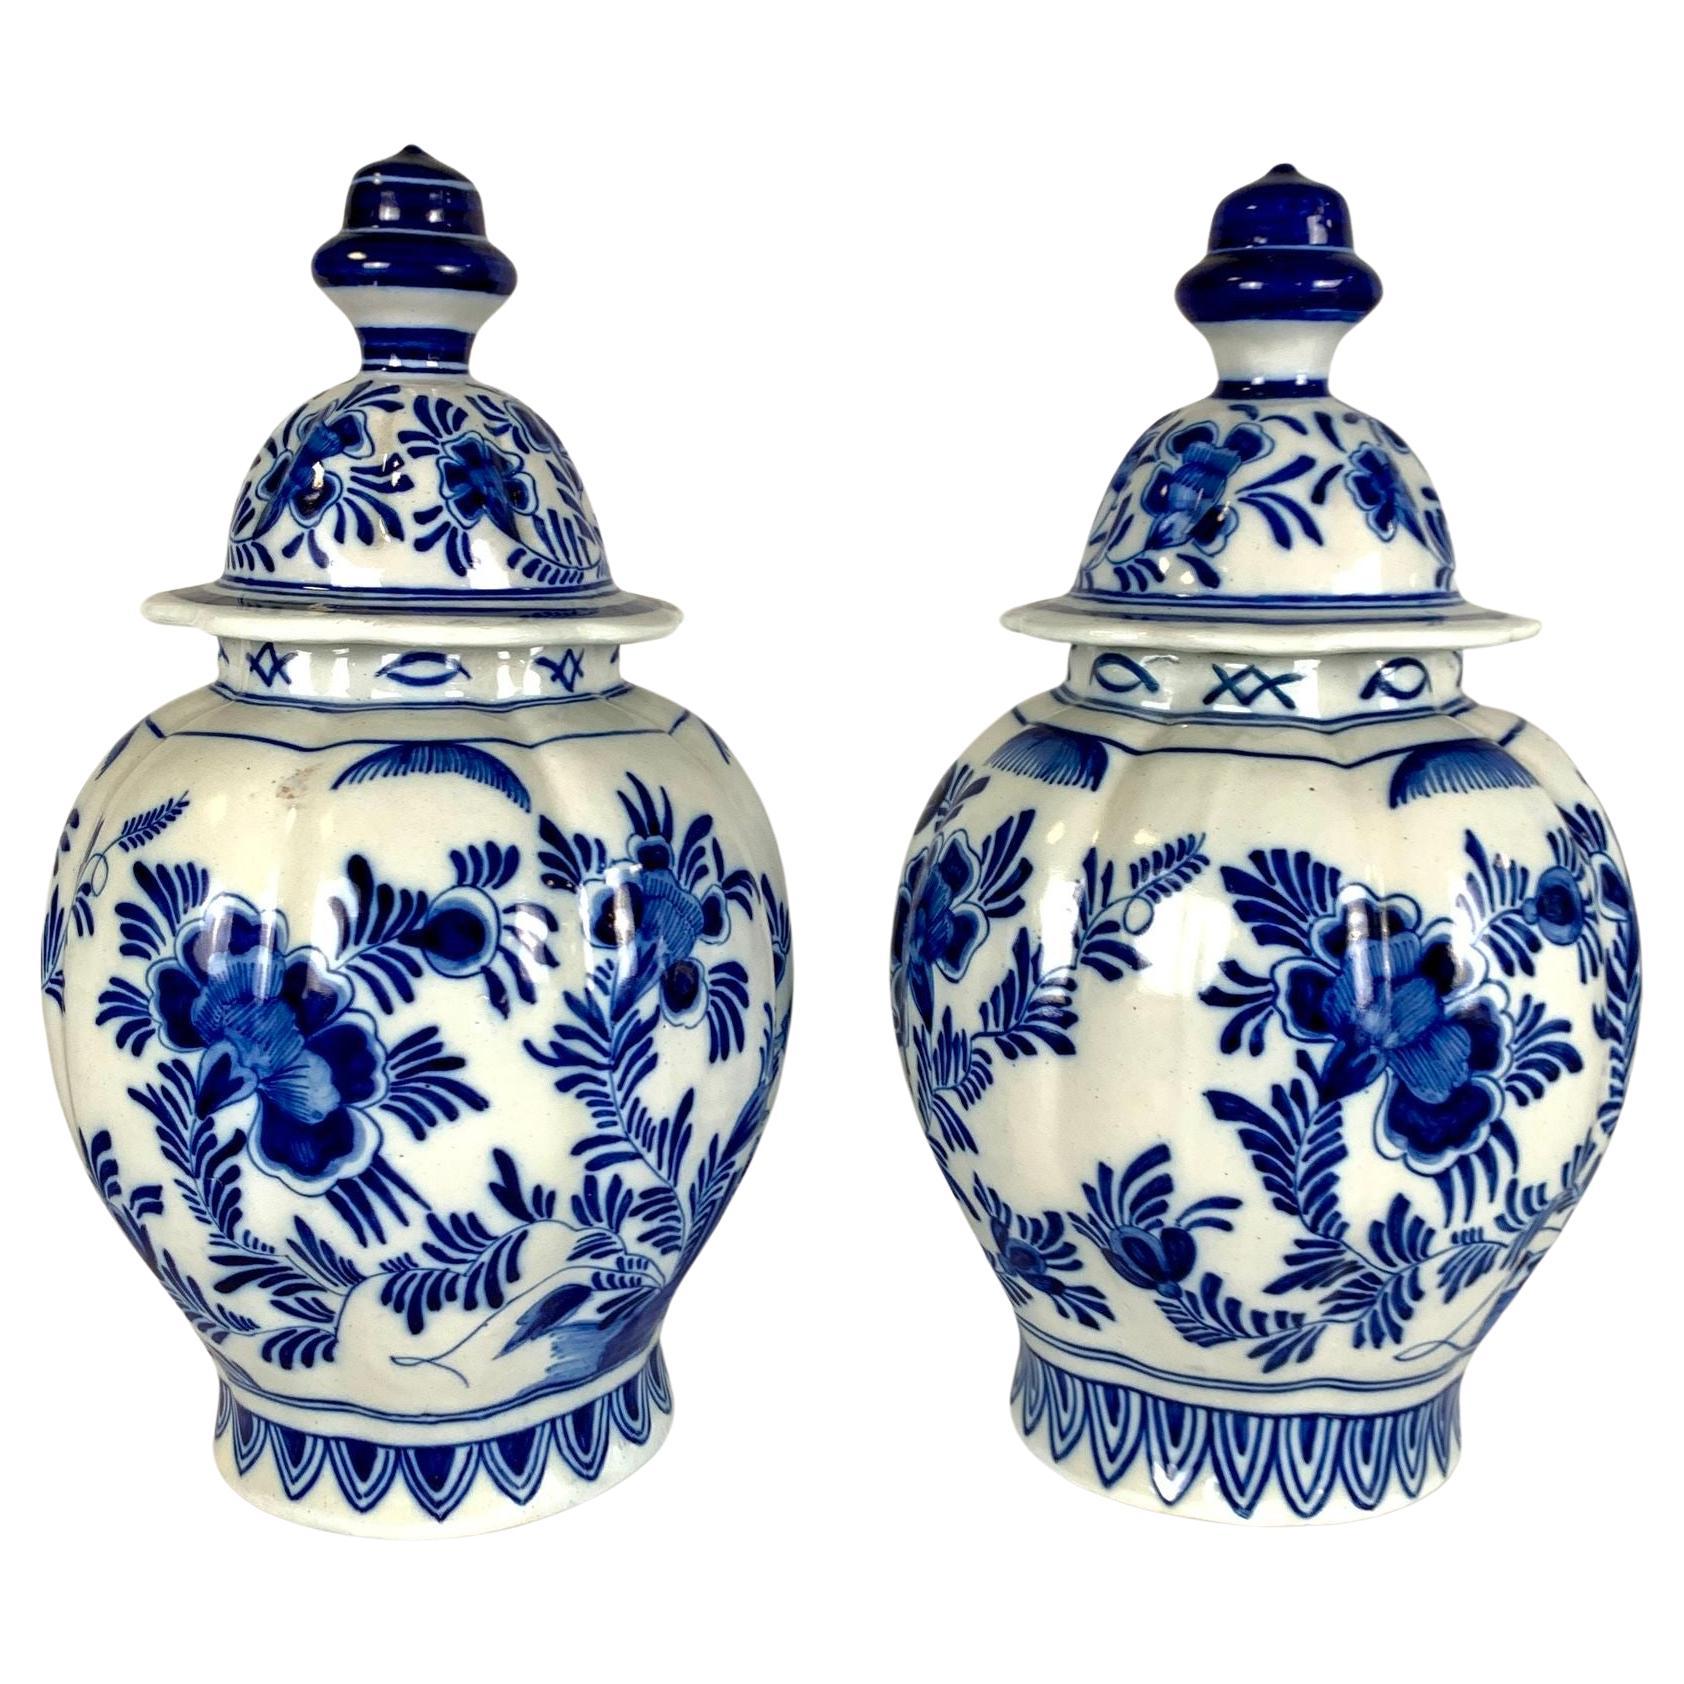 Paire de pots de Delft bleus et blancs peints à la main, Pays-Bas